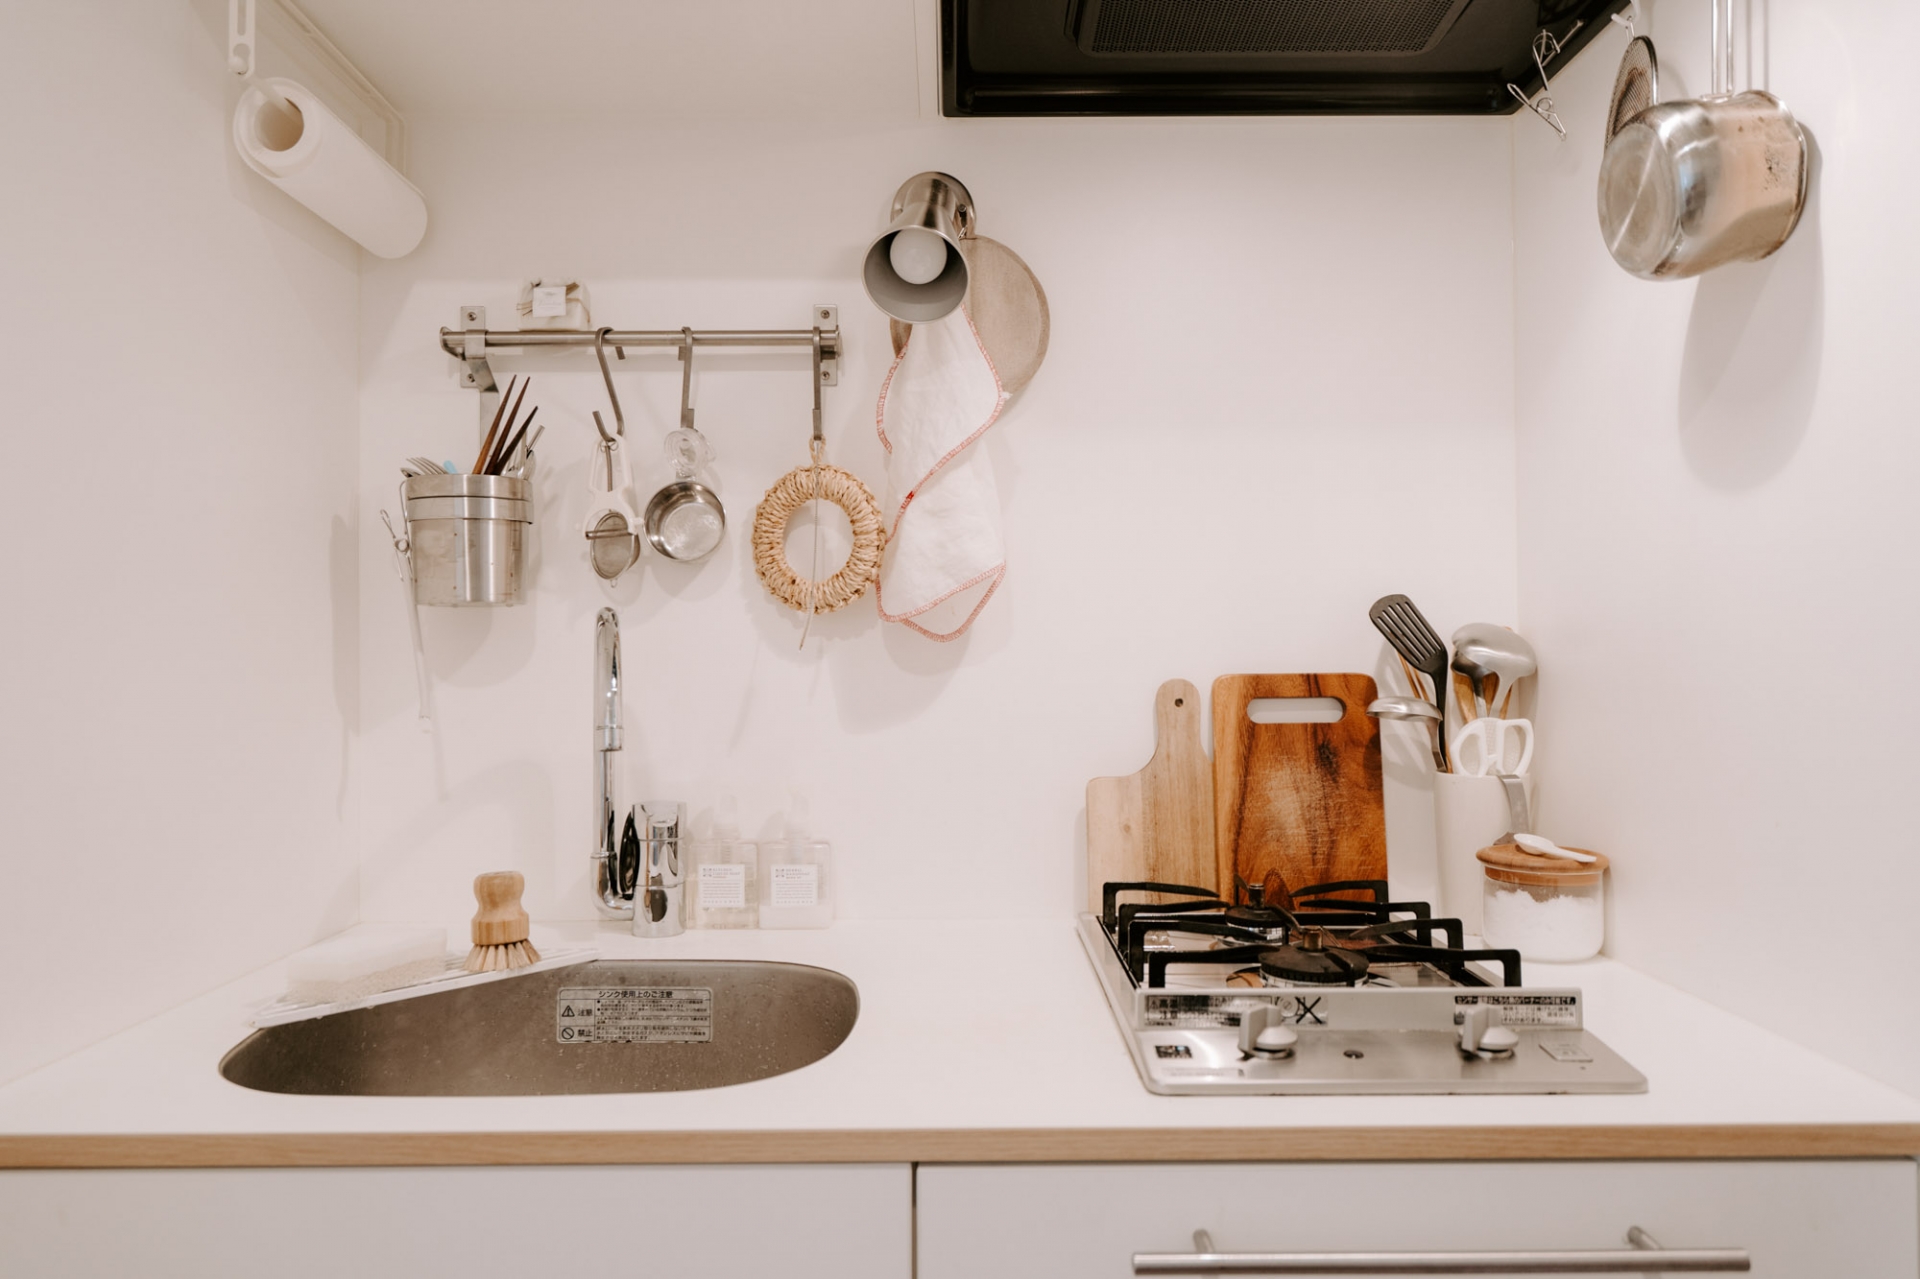 Khu vực nấu nướng nhỏ gọn với một chiếc bếp đơn và bồn rửa, kết hợp nhiều móc treo gắn tường để lưu trữ dụng cụ nấu nướng, khăn lau, cuộn giấy ăn,...